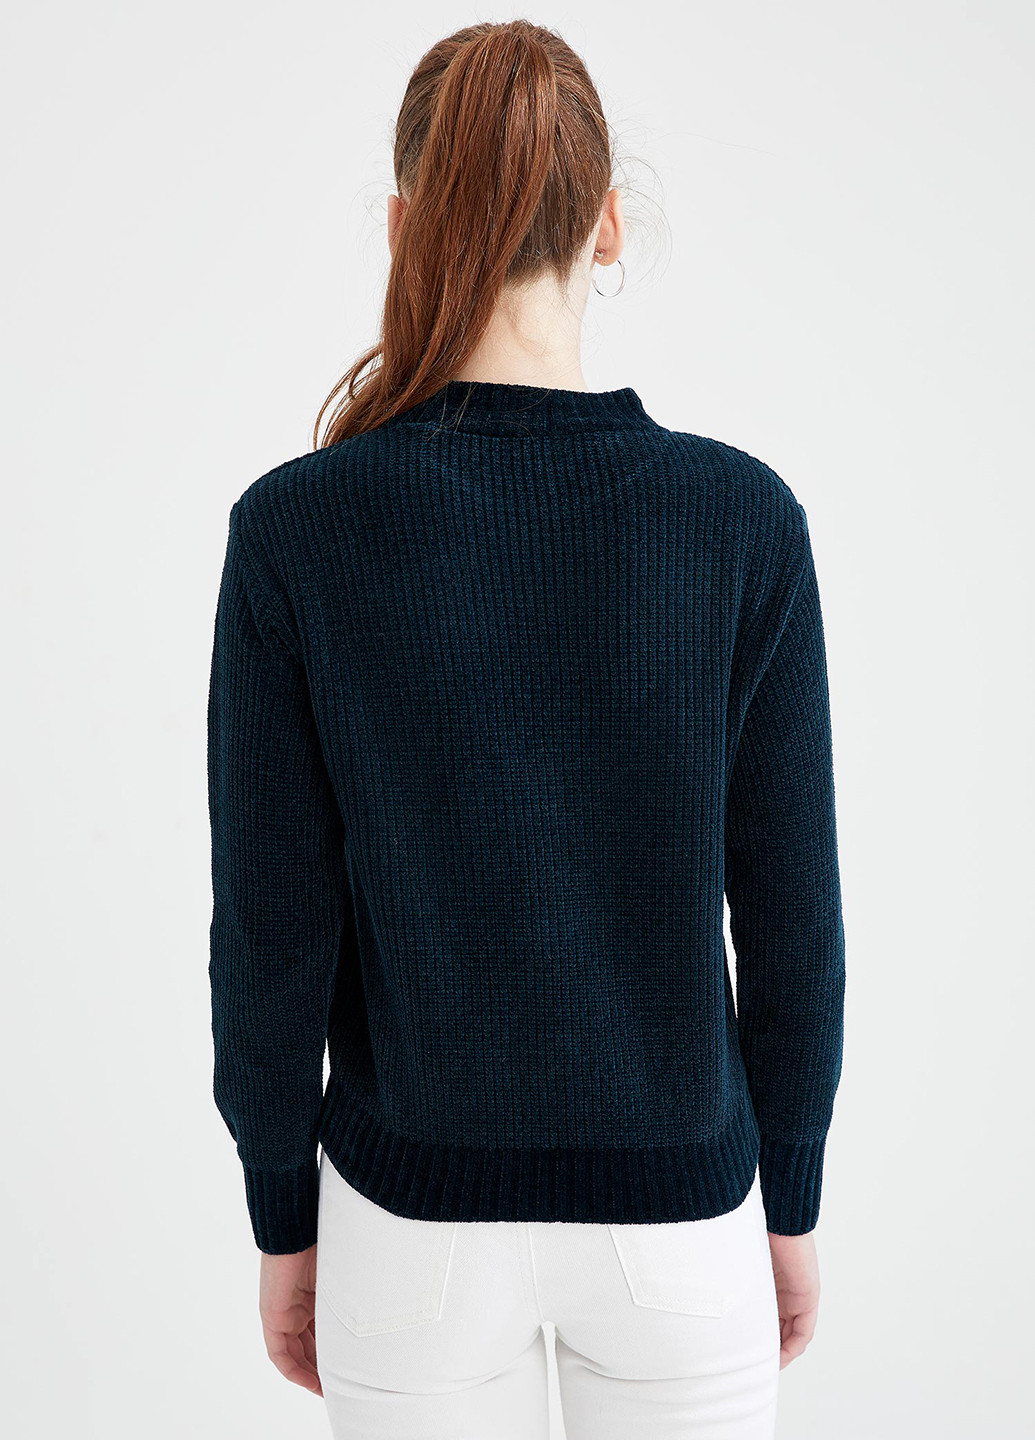 Темно-синий демисезонный свитер джемпер DeFacto